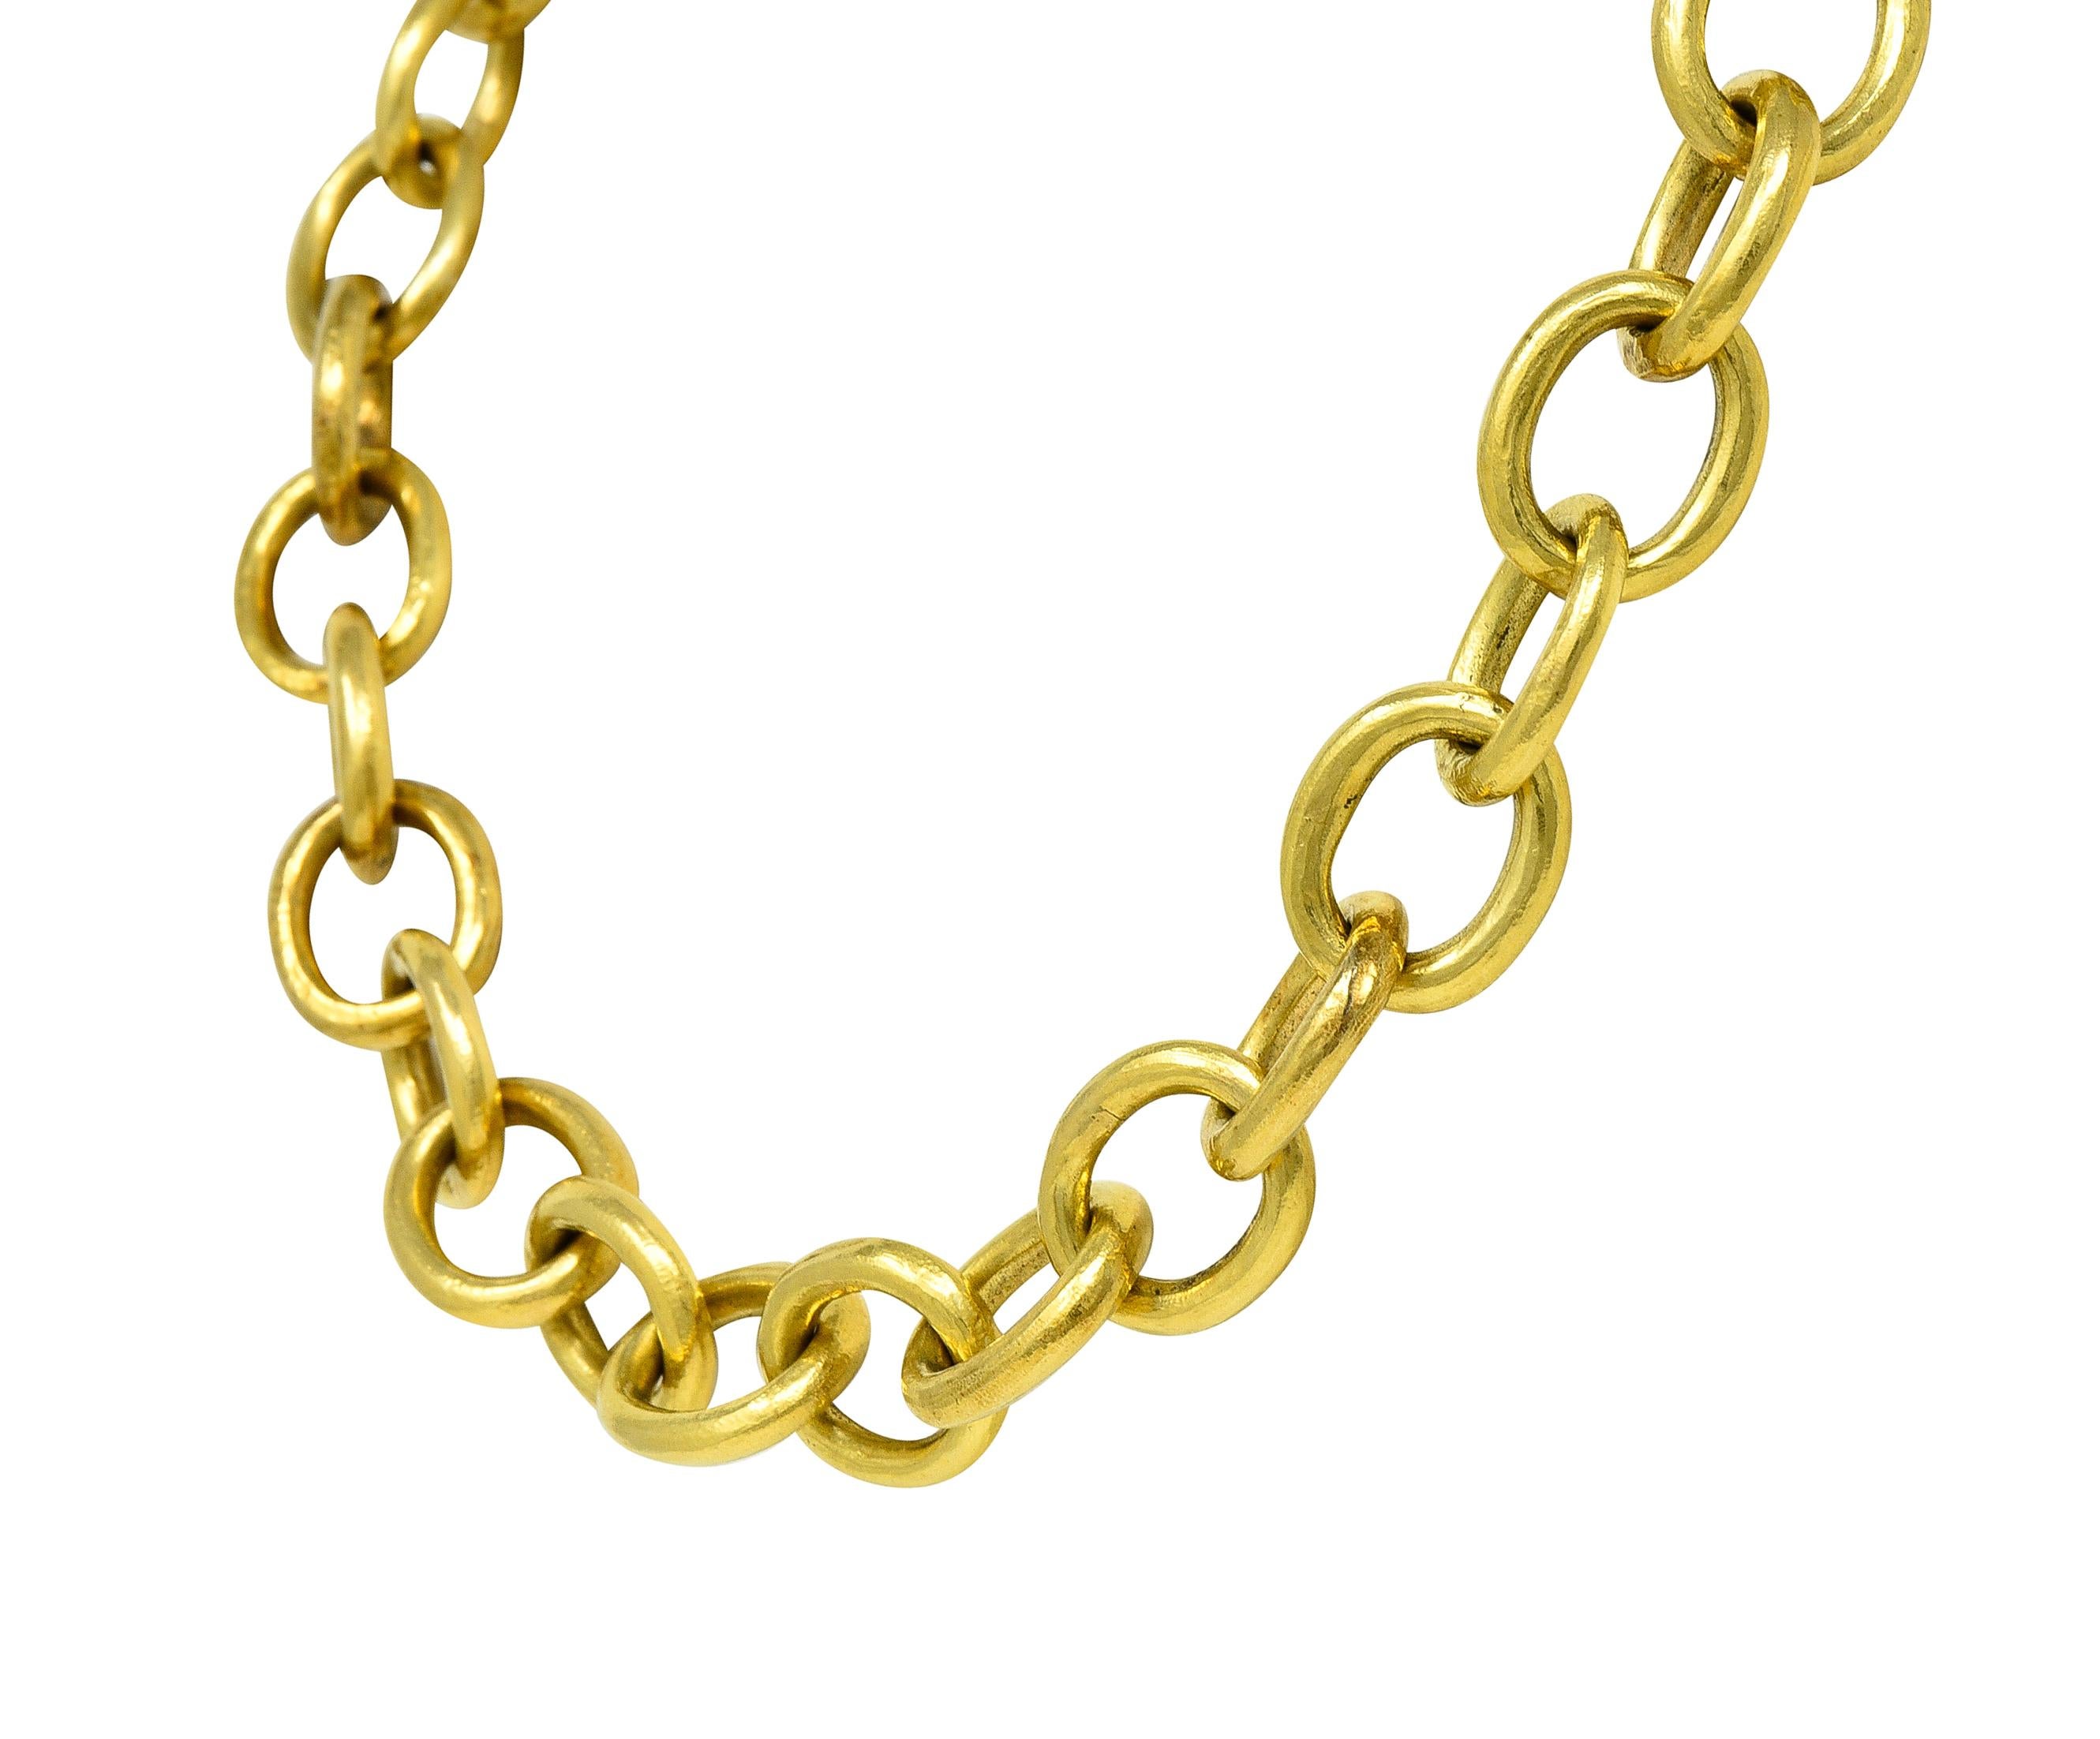 Cabochon Elizabeth Locke 1990's Sapphire 18 Karat Gold Cable Link Chain Vintage Necklace For Sale